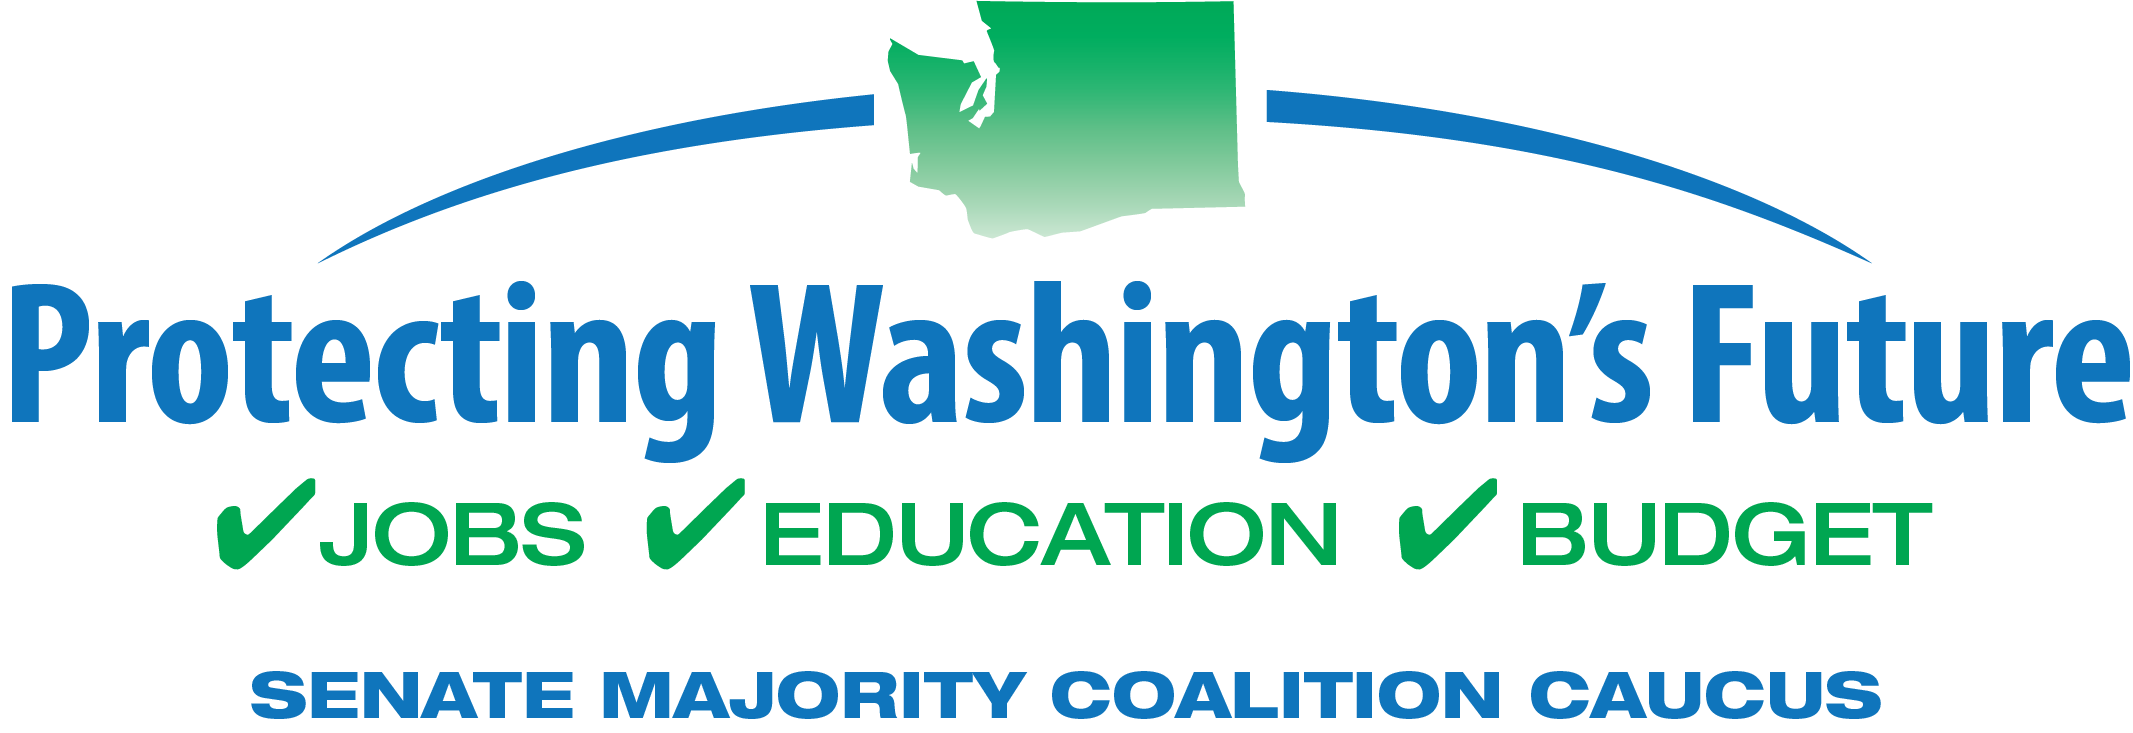 2017 PWF Logo 2 color - Senate Republican Caucus